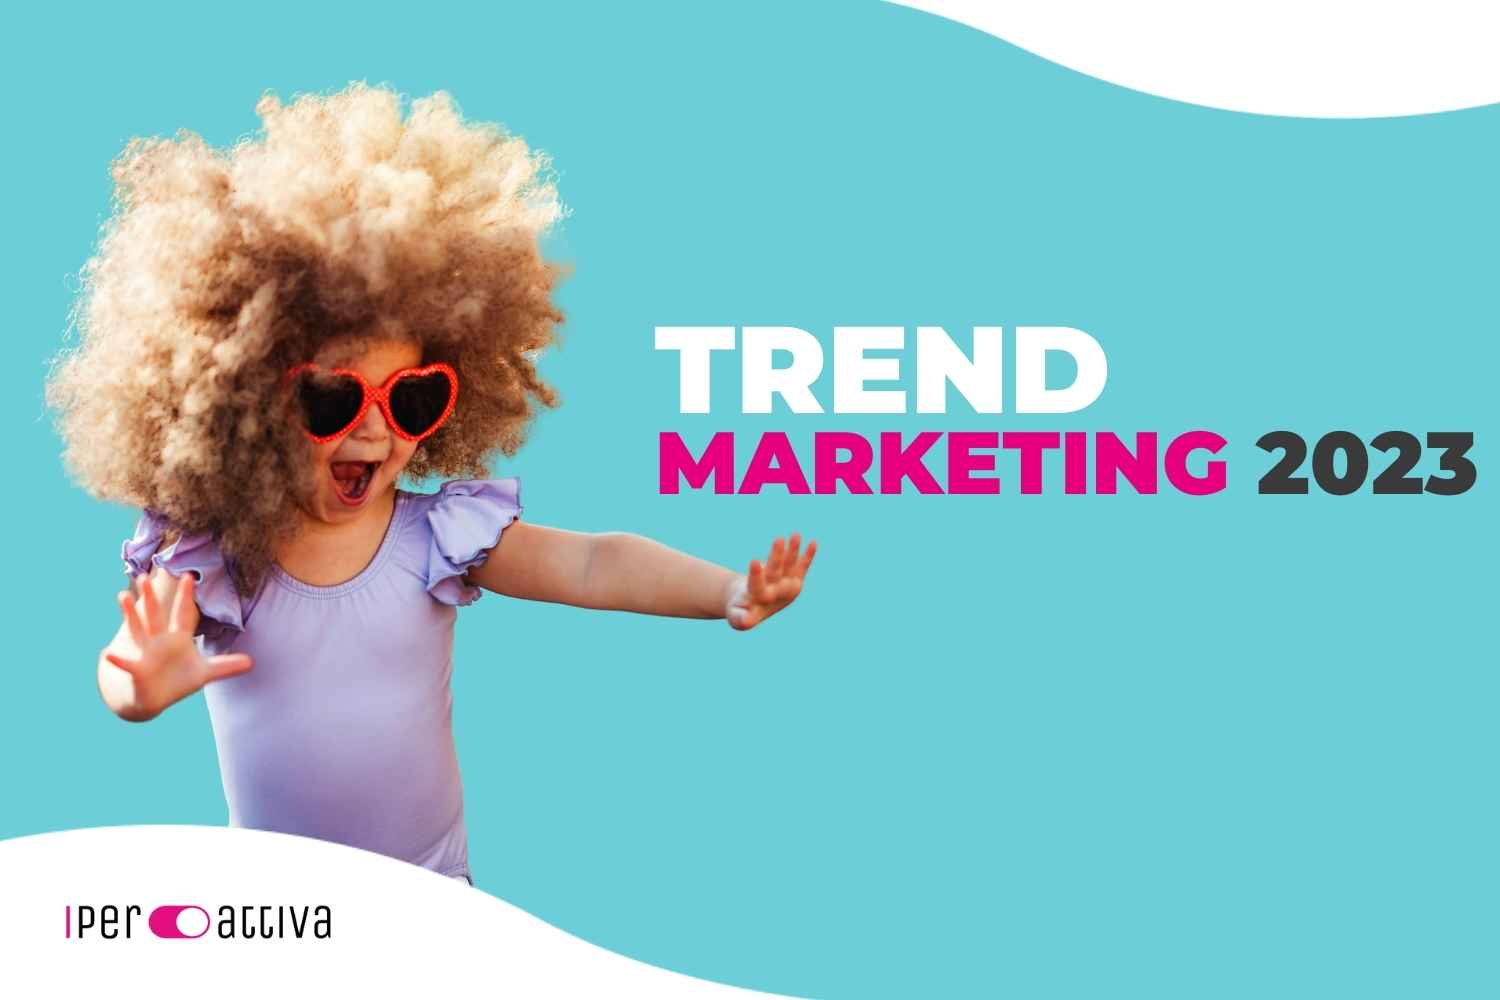 trend-del-marketing-2023-bambina-con-capelli-ricci